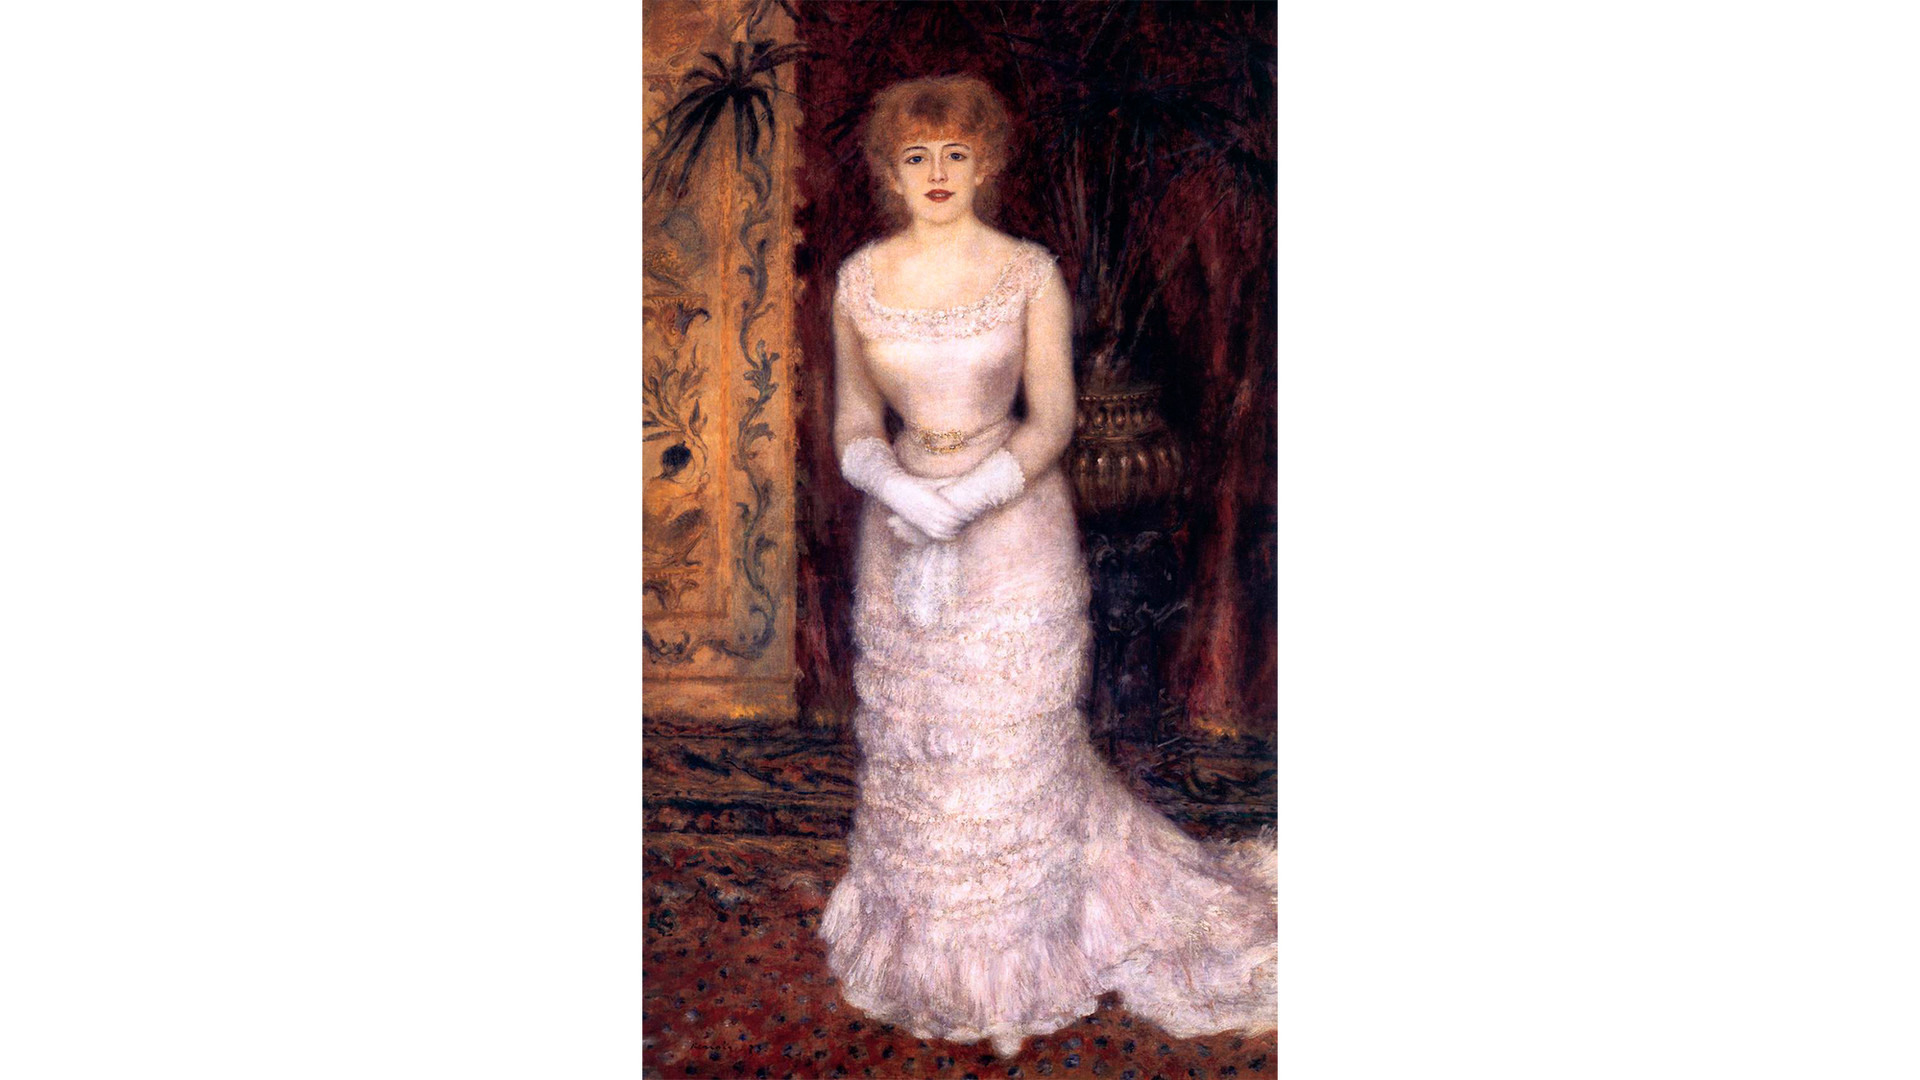  ‘Jeanne Samary con vestido escotado’, de Pierre-Auguste Renoir.